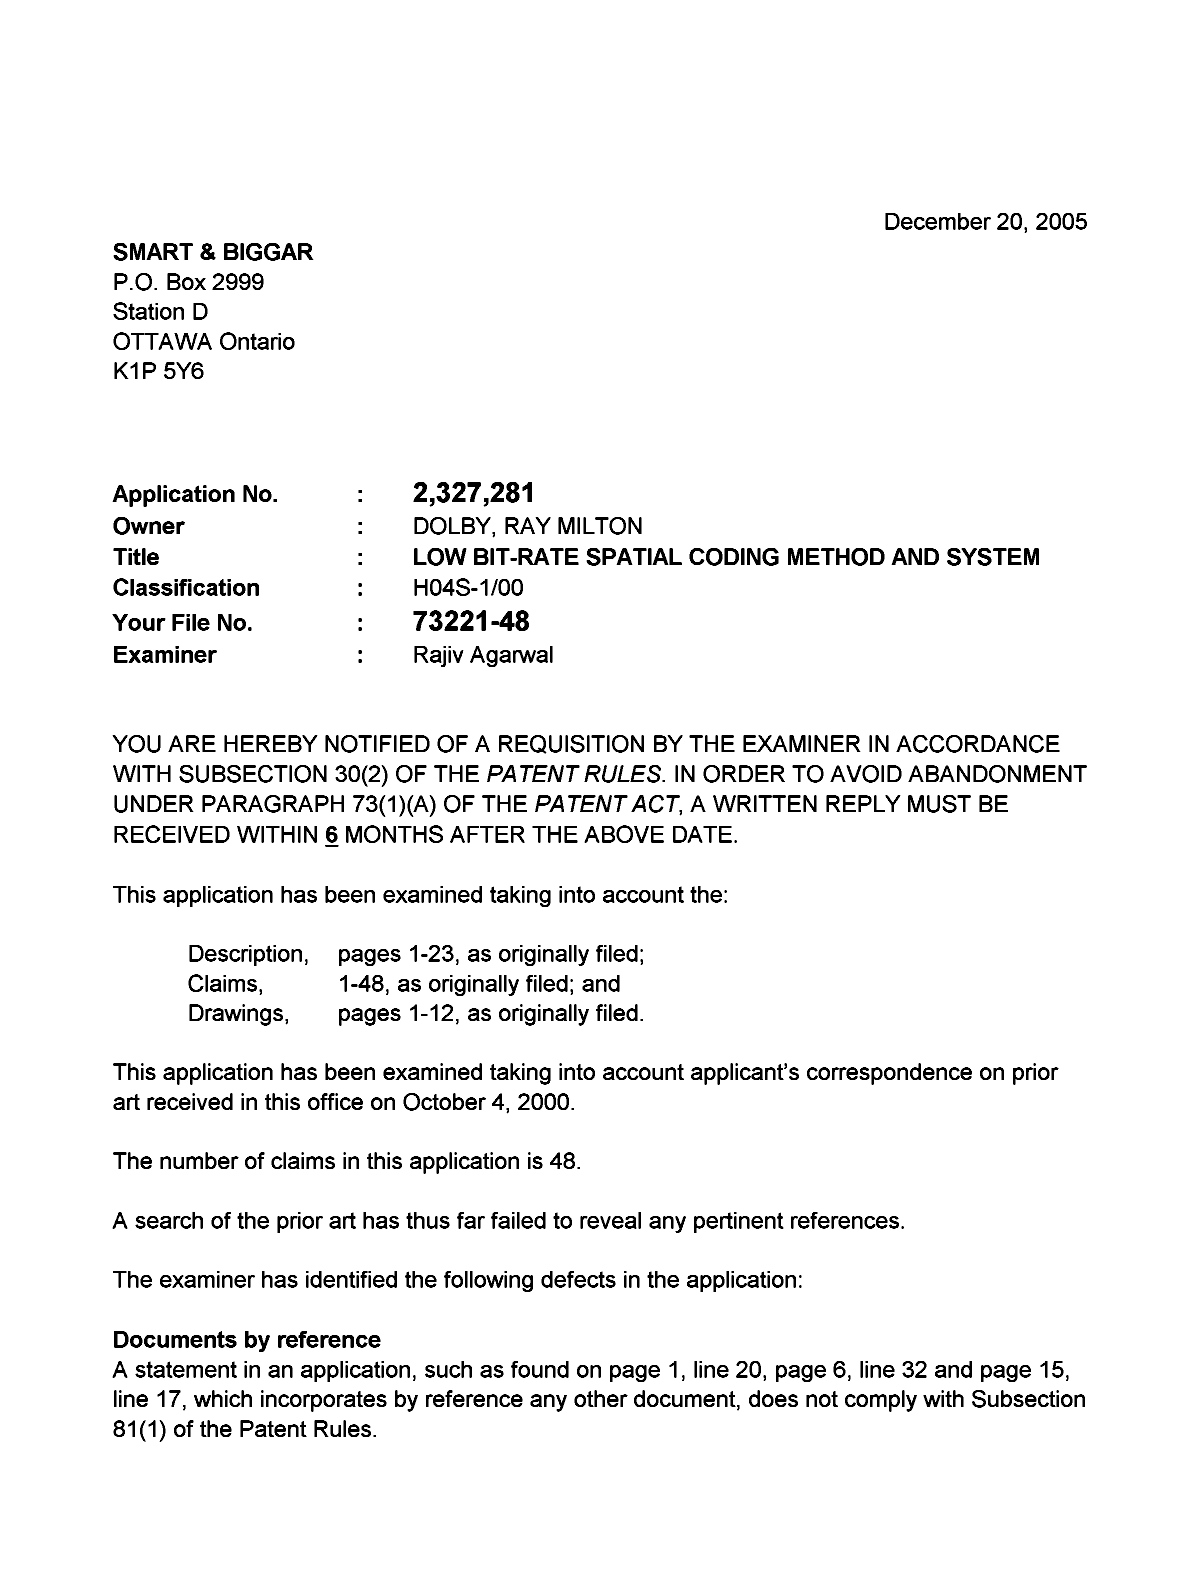 Document de brevet canadien 2327281. Poursuite-Amendment 20051220. Image 1 de 2